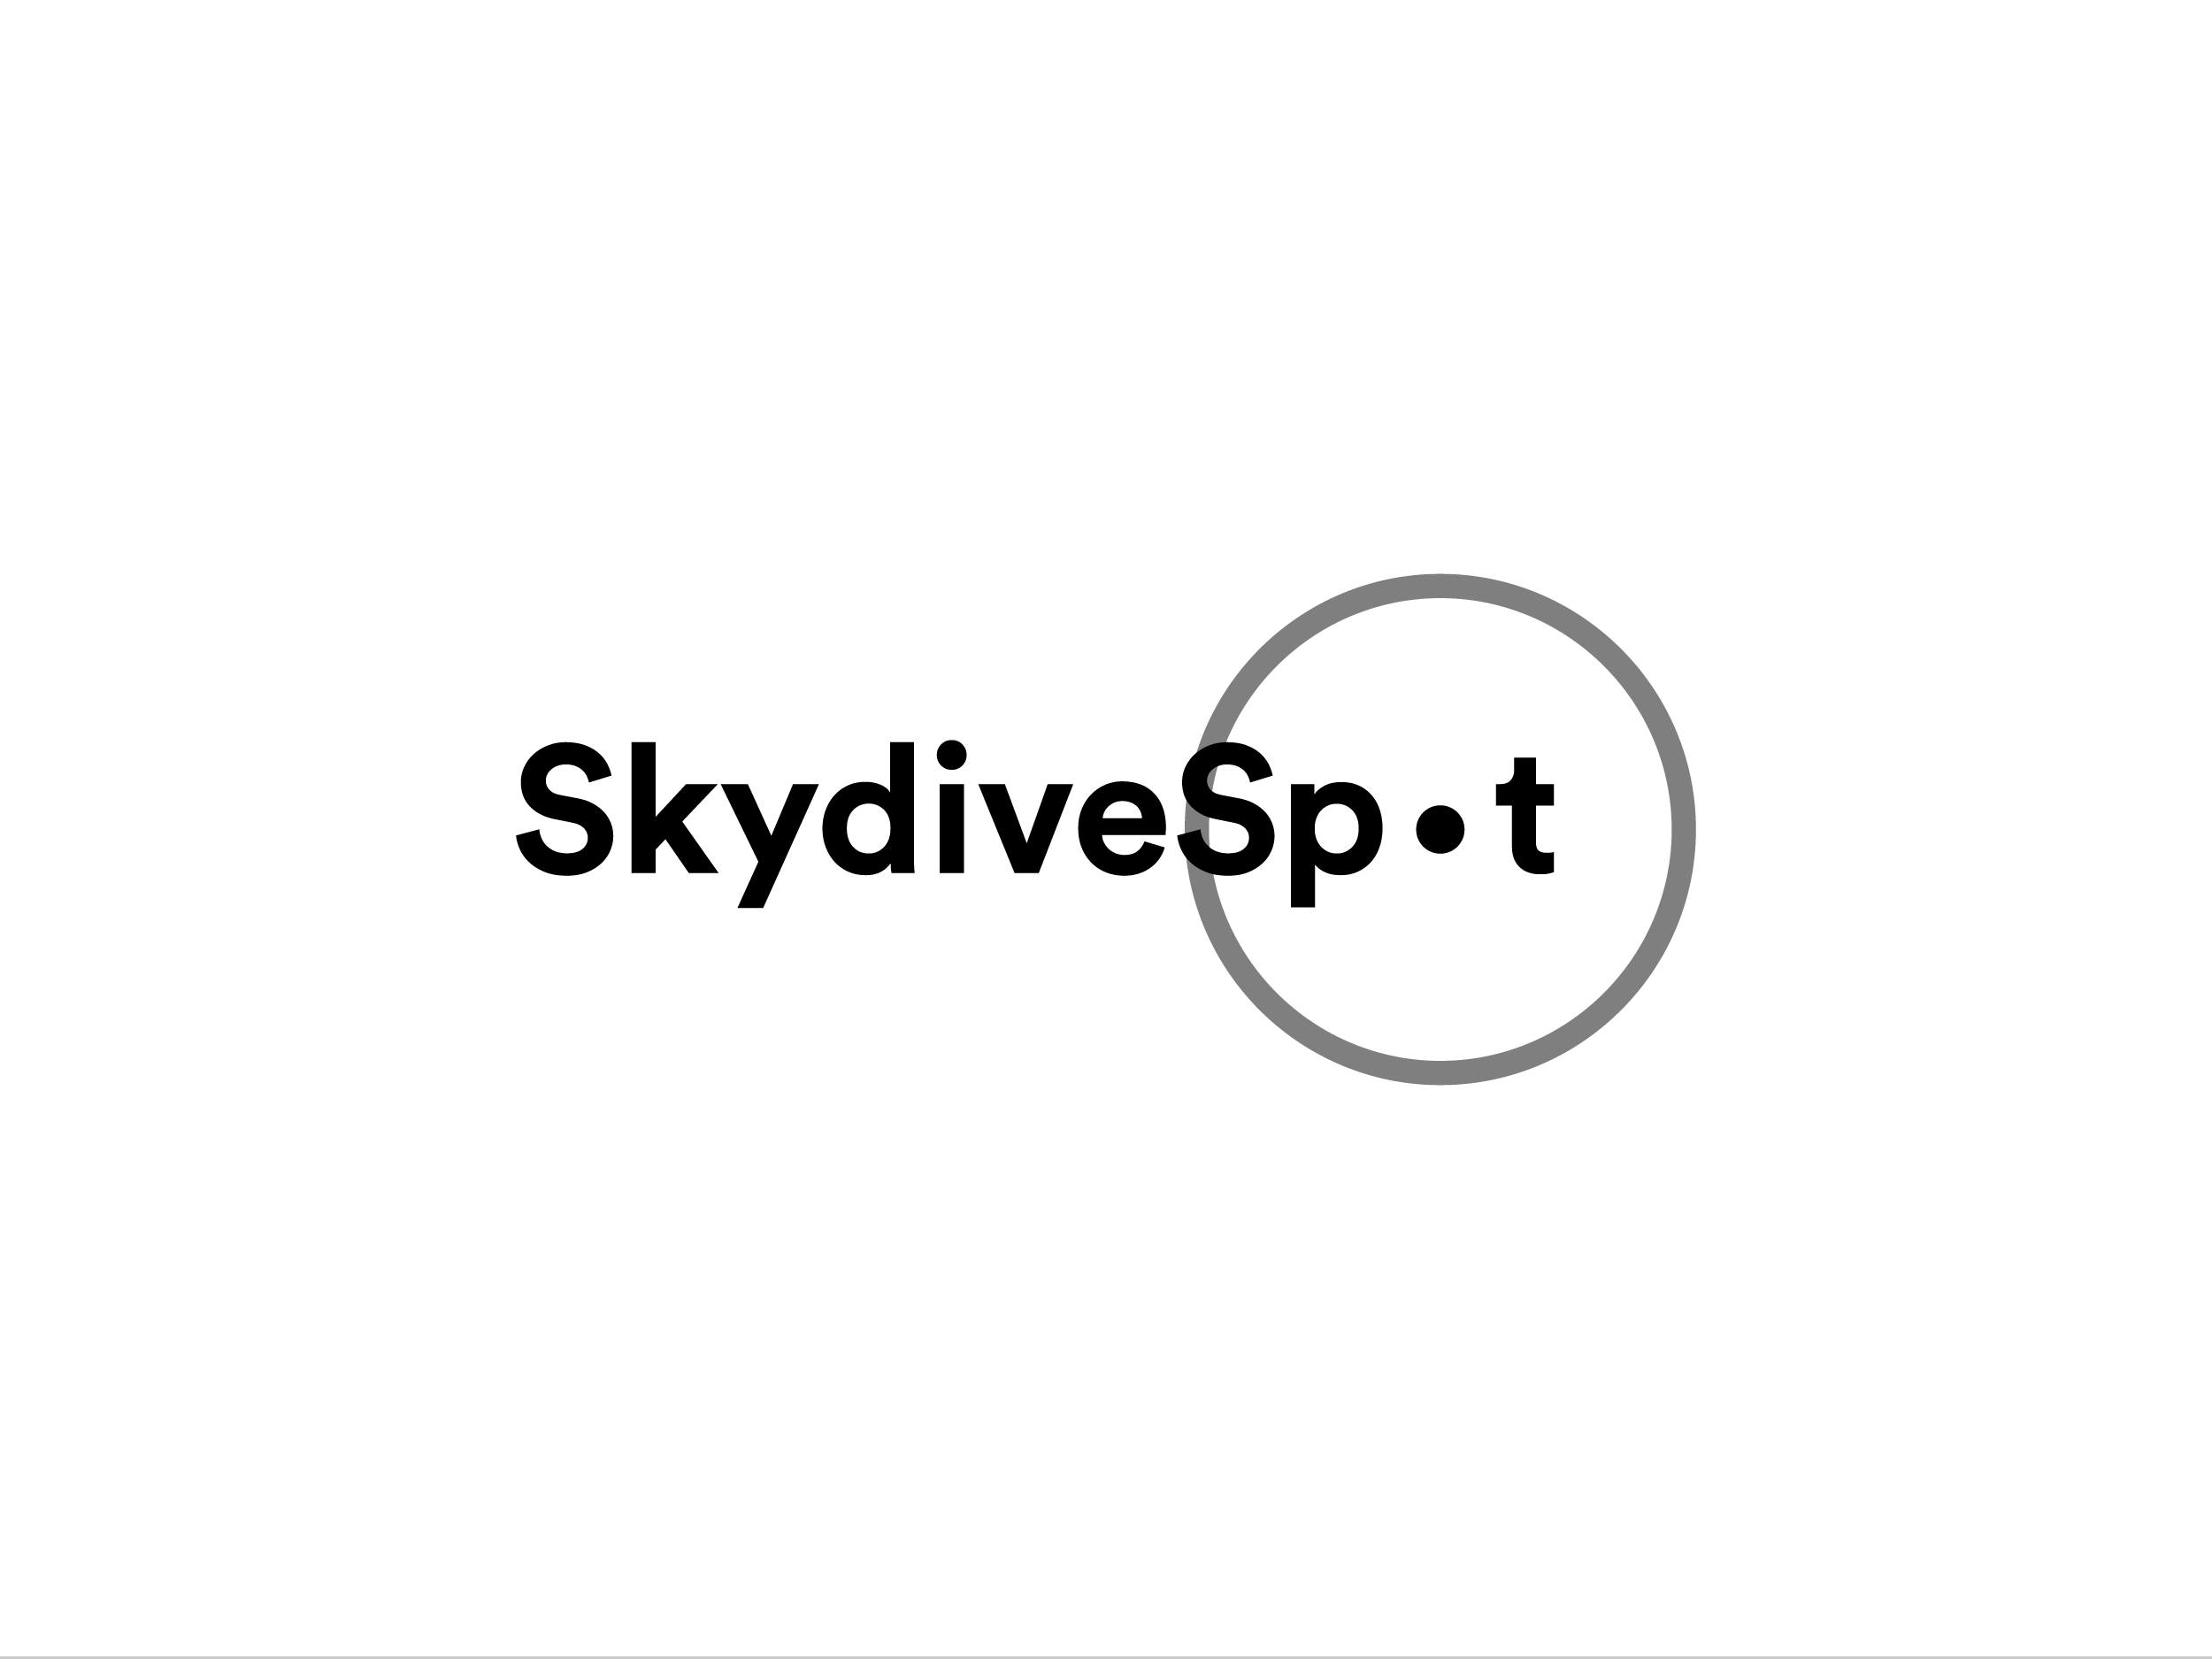  SkydiveSpot, web service 